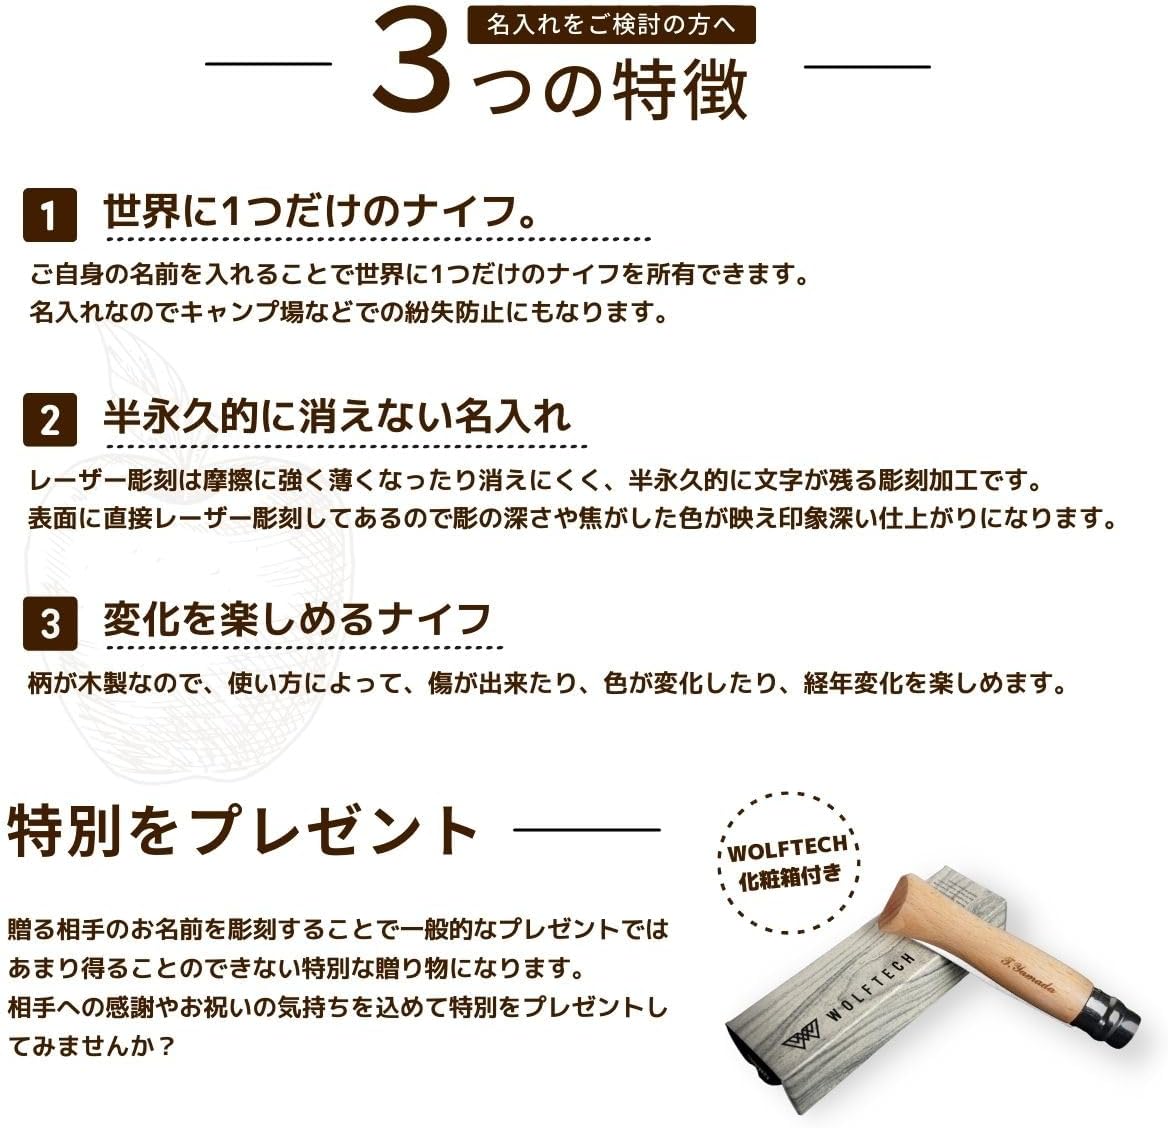 【名入れ可能】 OPINEL オピネルナイフ No.6 ～ No.12 名入れ 選べる カーボン スチールナイフ